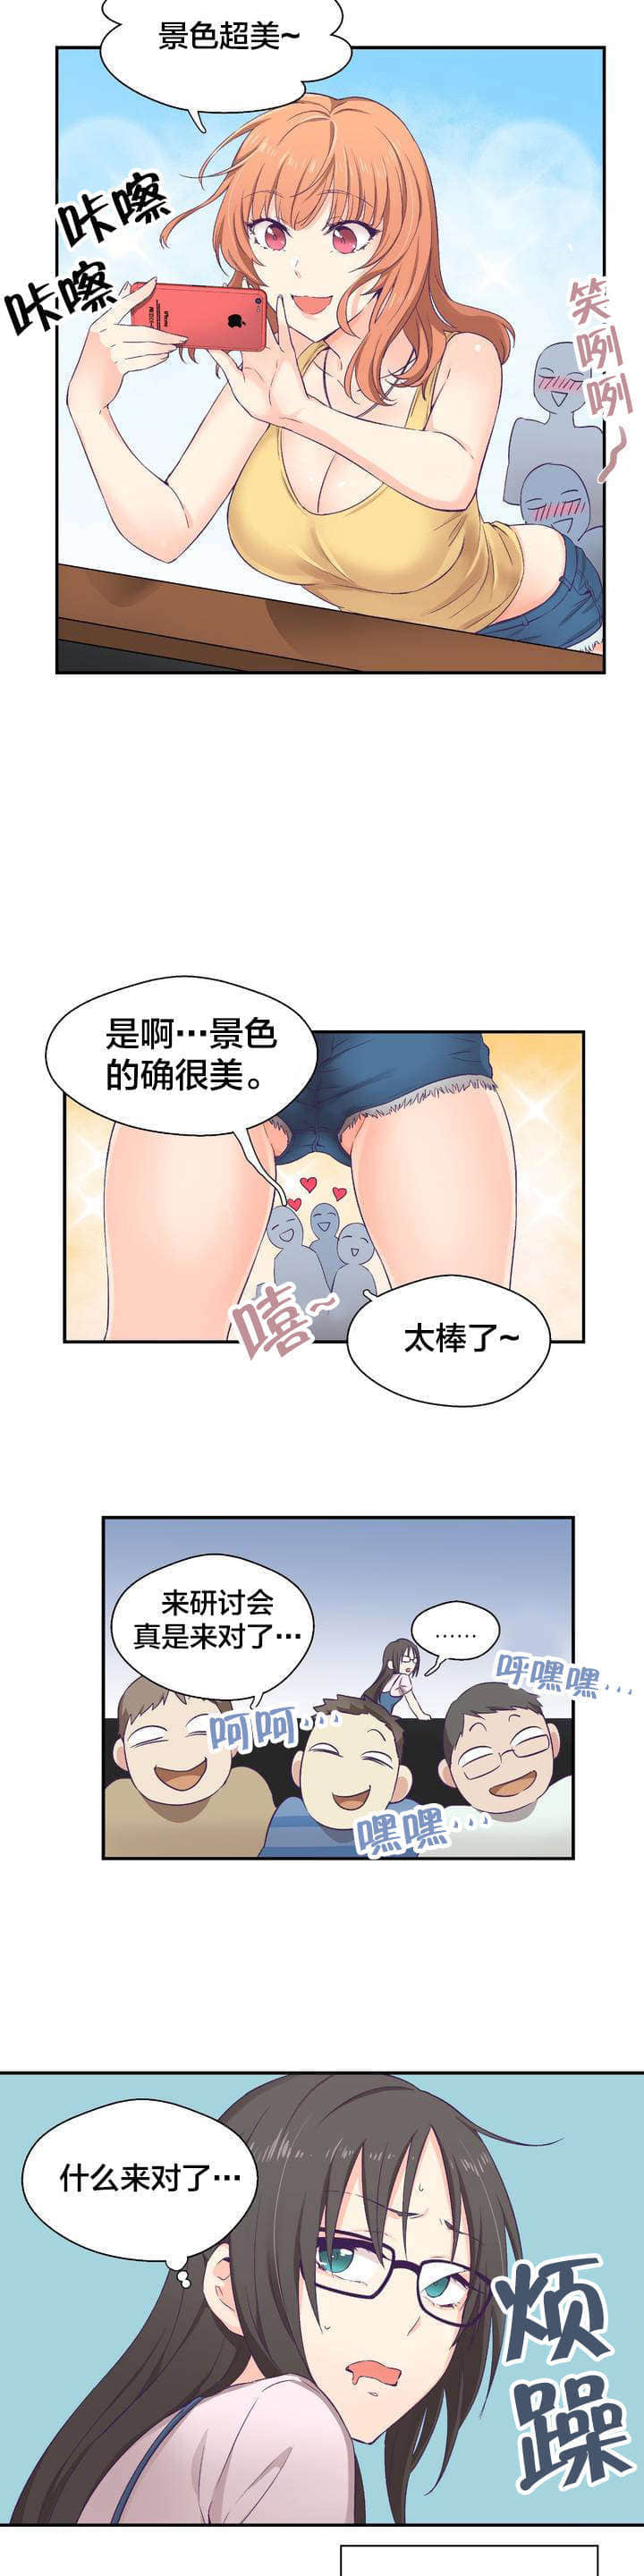 咪路-咪路漫画 & 完整版韩漫 — 全集免费阅读